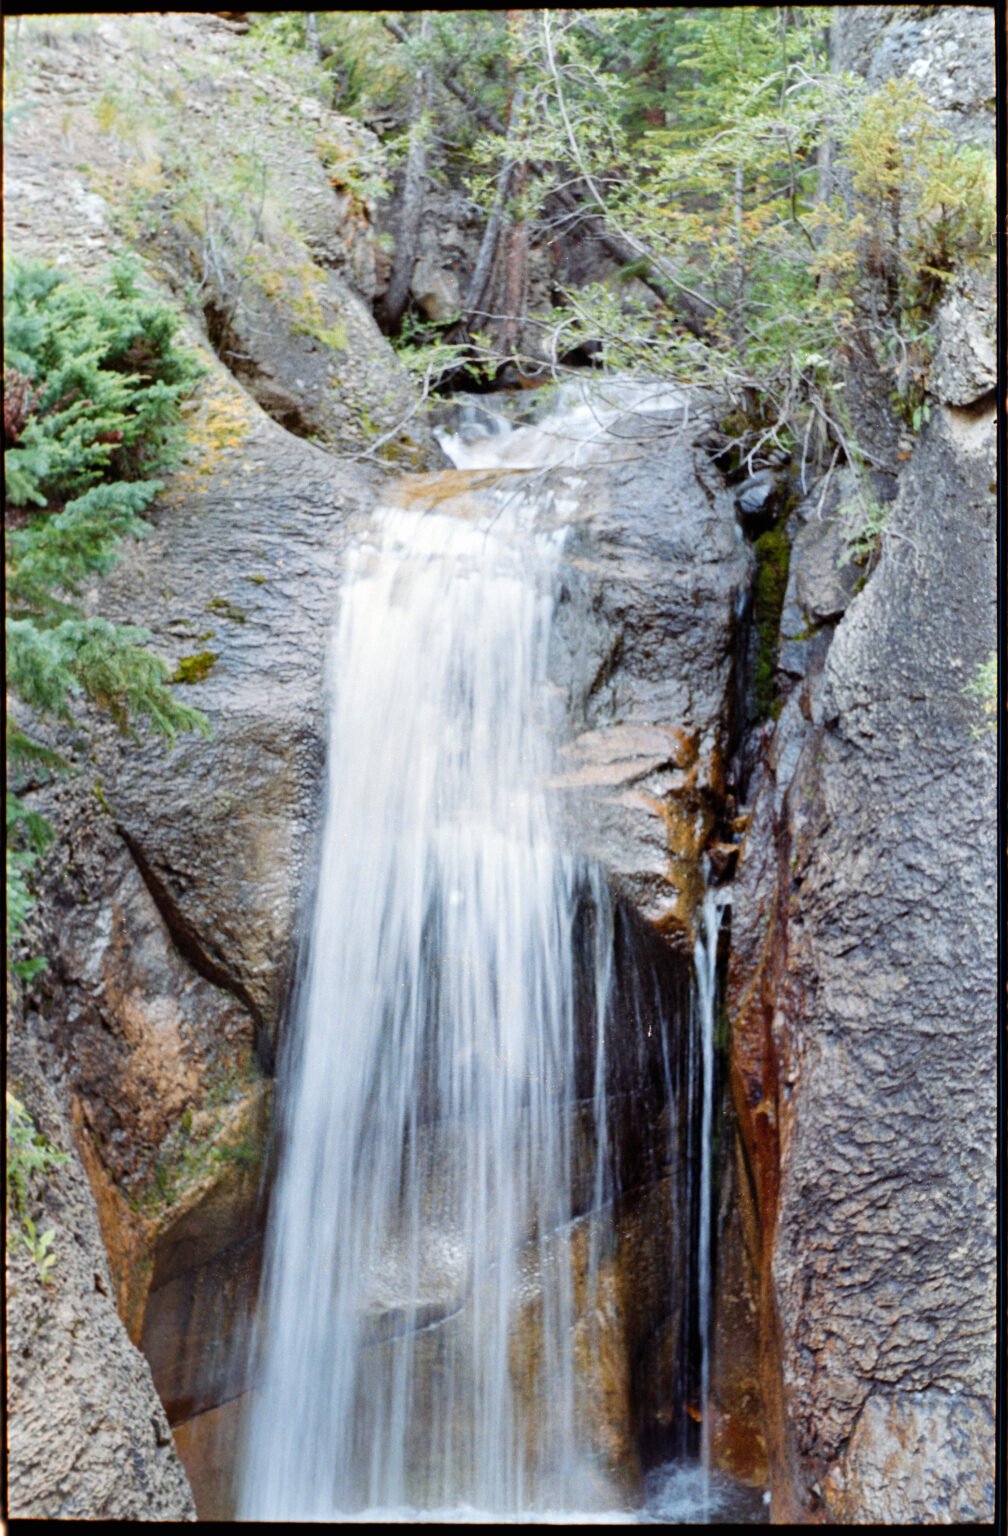 WaterfallShower2